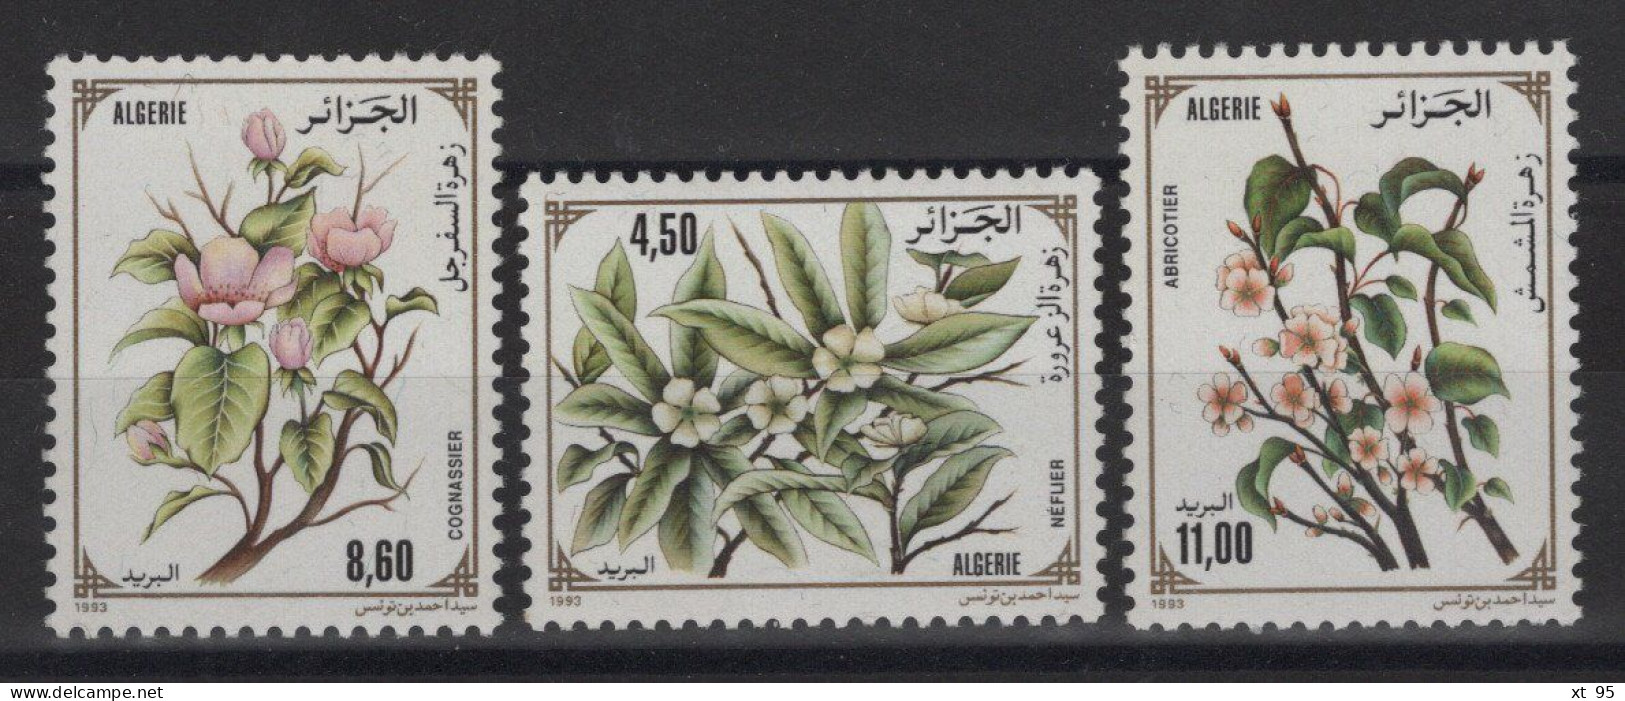 Algerie - N°1040 à 1042 - Flore - Cote 5.10€ - ** Neuf Sans Charniere - Algérie (1962-...)